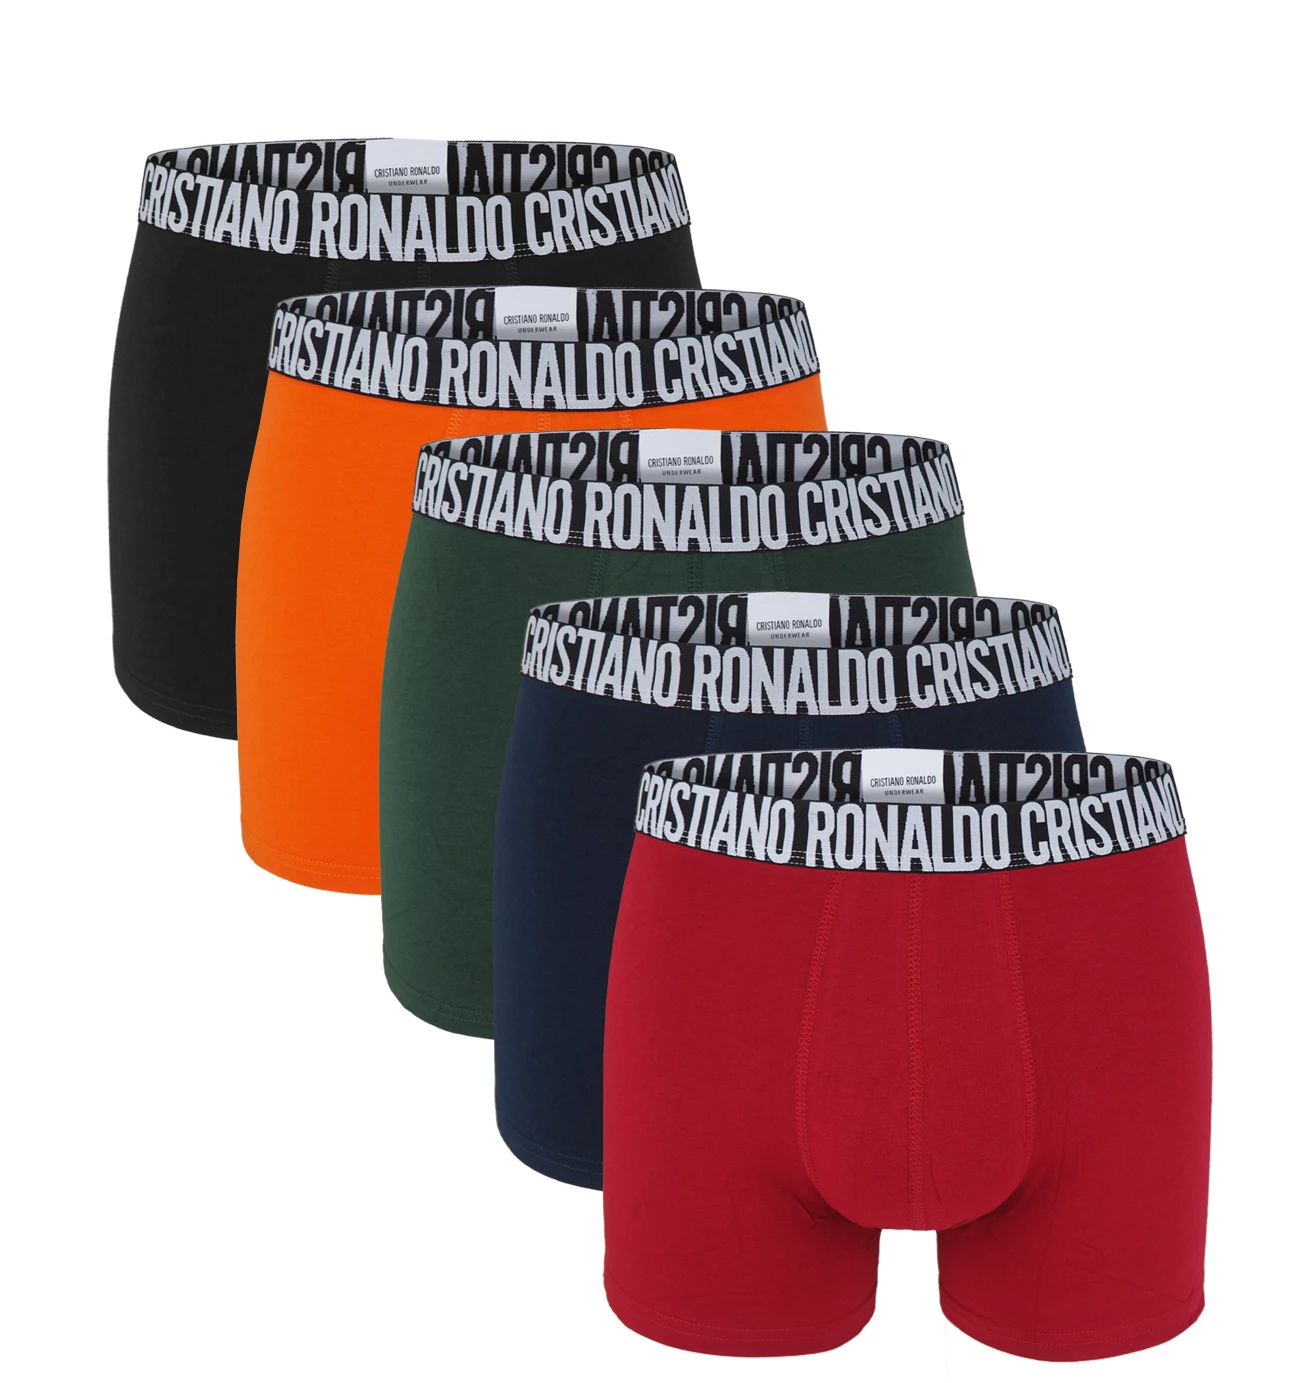 CRISTIANO RONALDO CR7 - boxerky 5PACK multicolor v darčekovom balení - limitovaná edícia